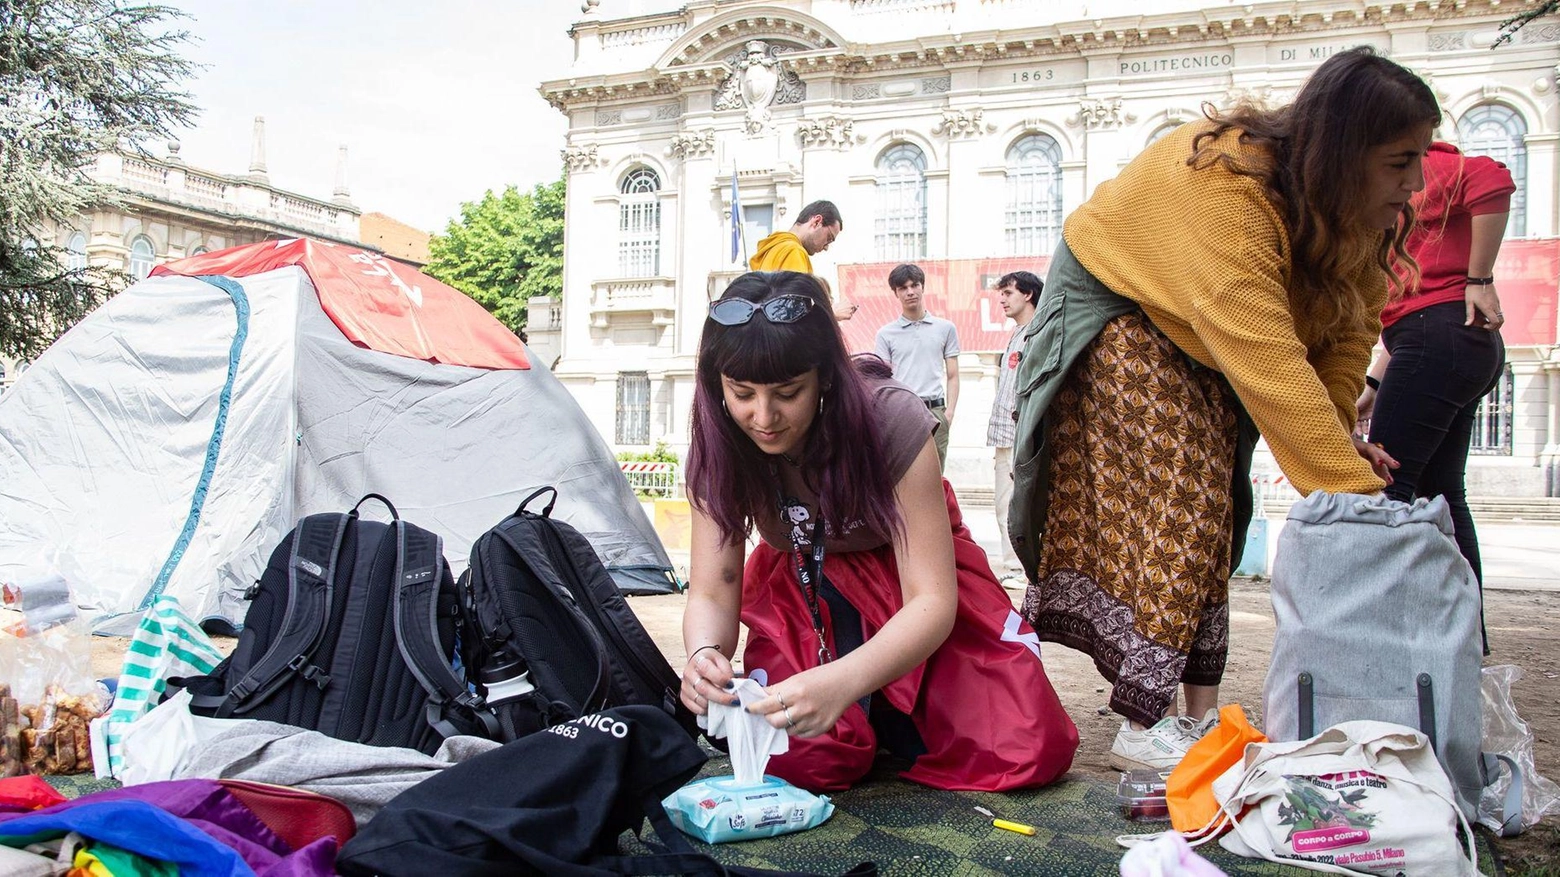 Gli studenti si accampano in tenda per fermare il caro affitti